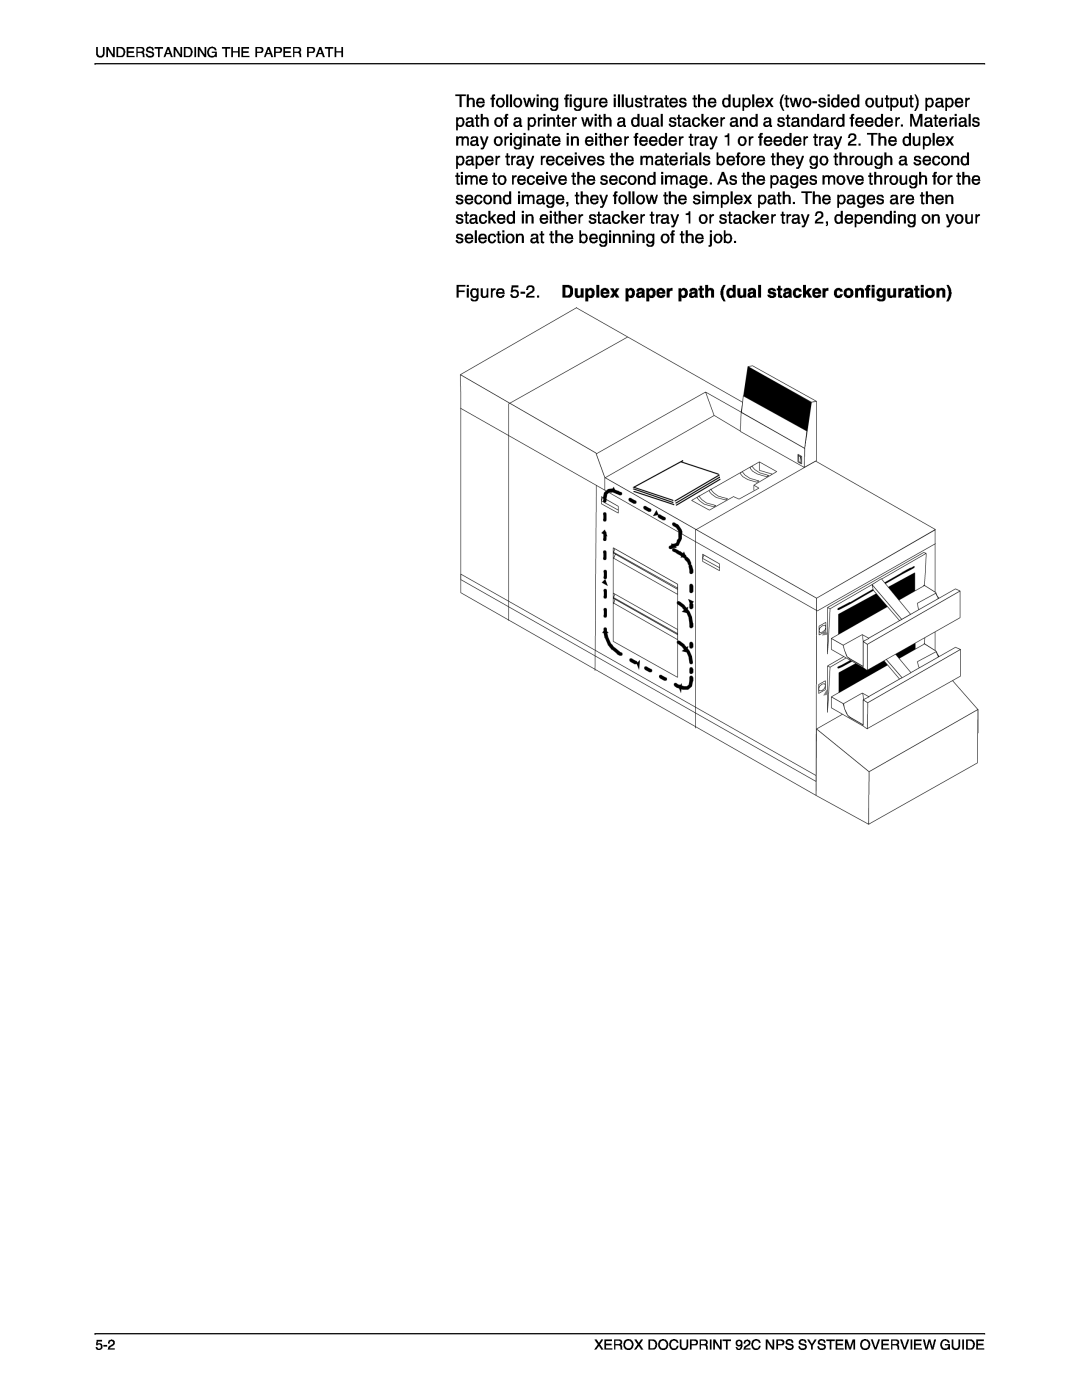 Xerox 92C NPS manual 2. Duplex paper path dual stacker configuration 